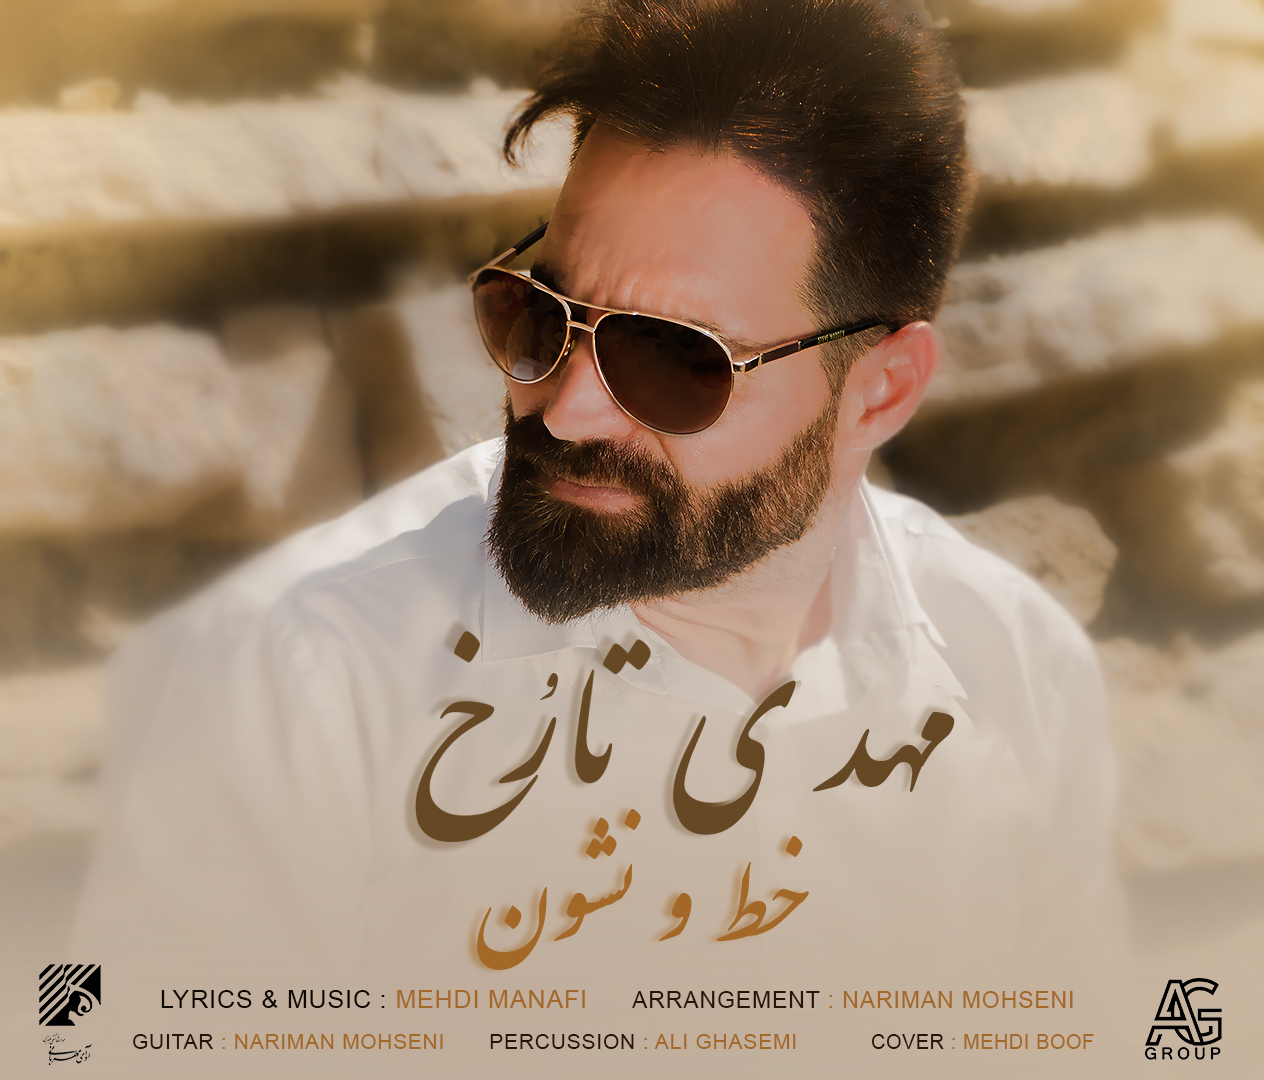  دانلود آهنگ جدید مهدی تارُخ - خط و نشون | Download New Music By Mehdi Tarokh - Khato Neshoun